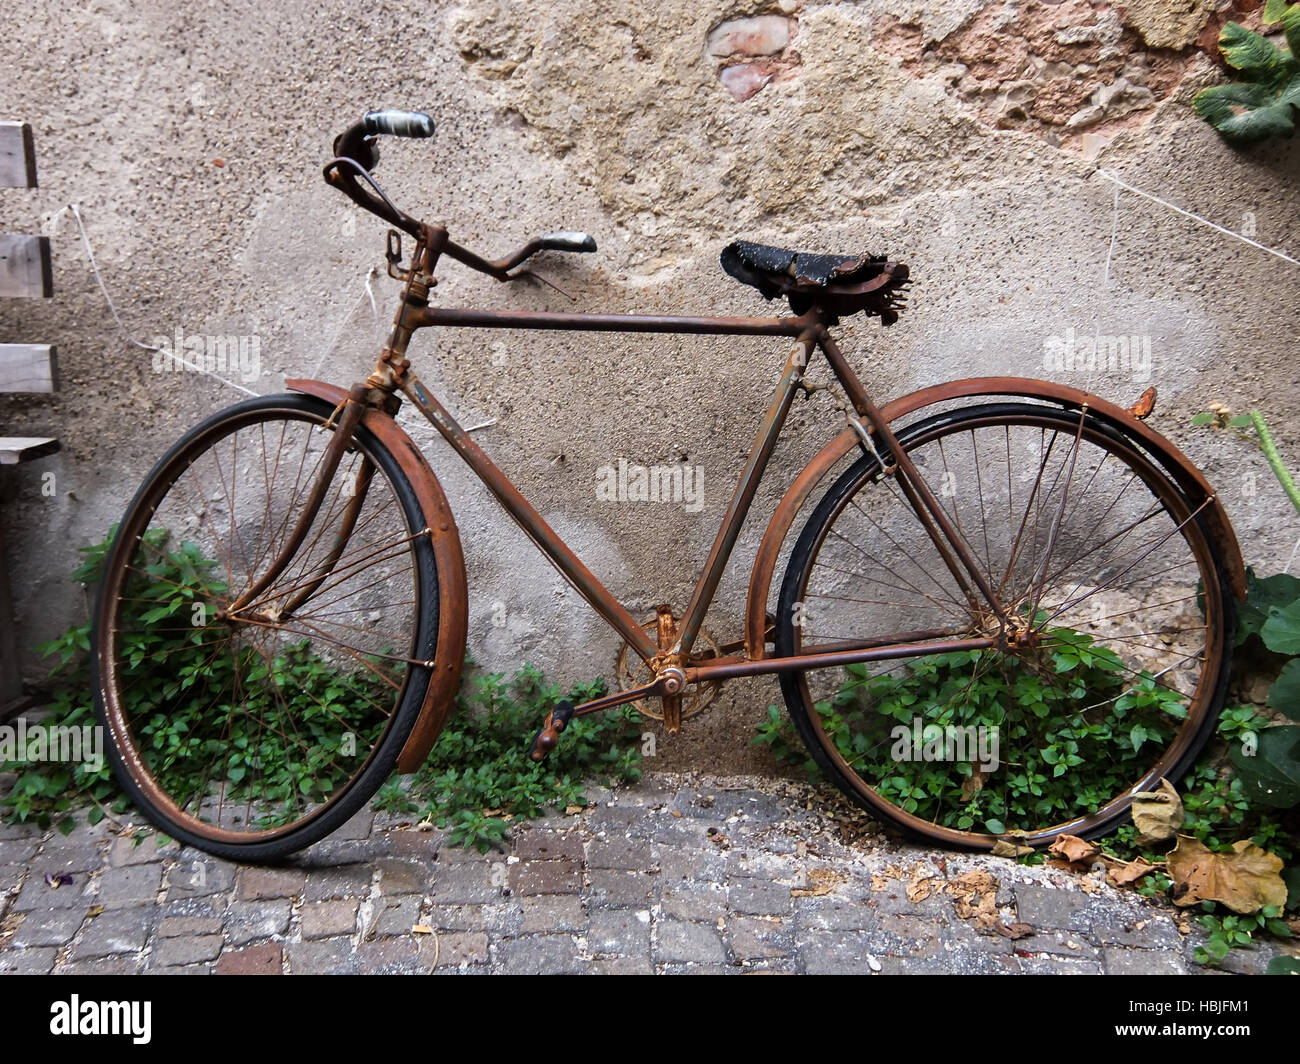 Alte rostige Oldtimer Fahrrad Stockfotografie - Alamy